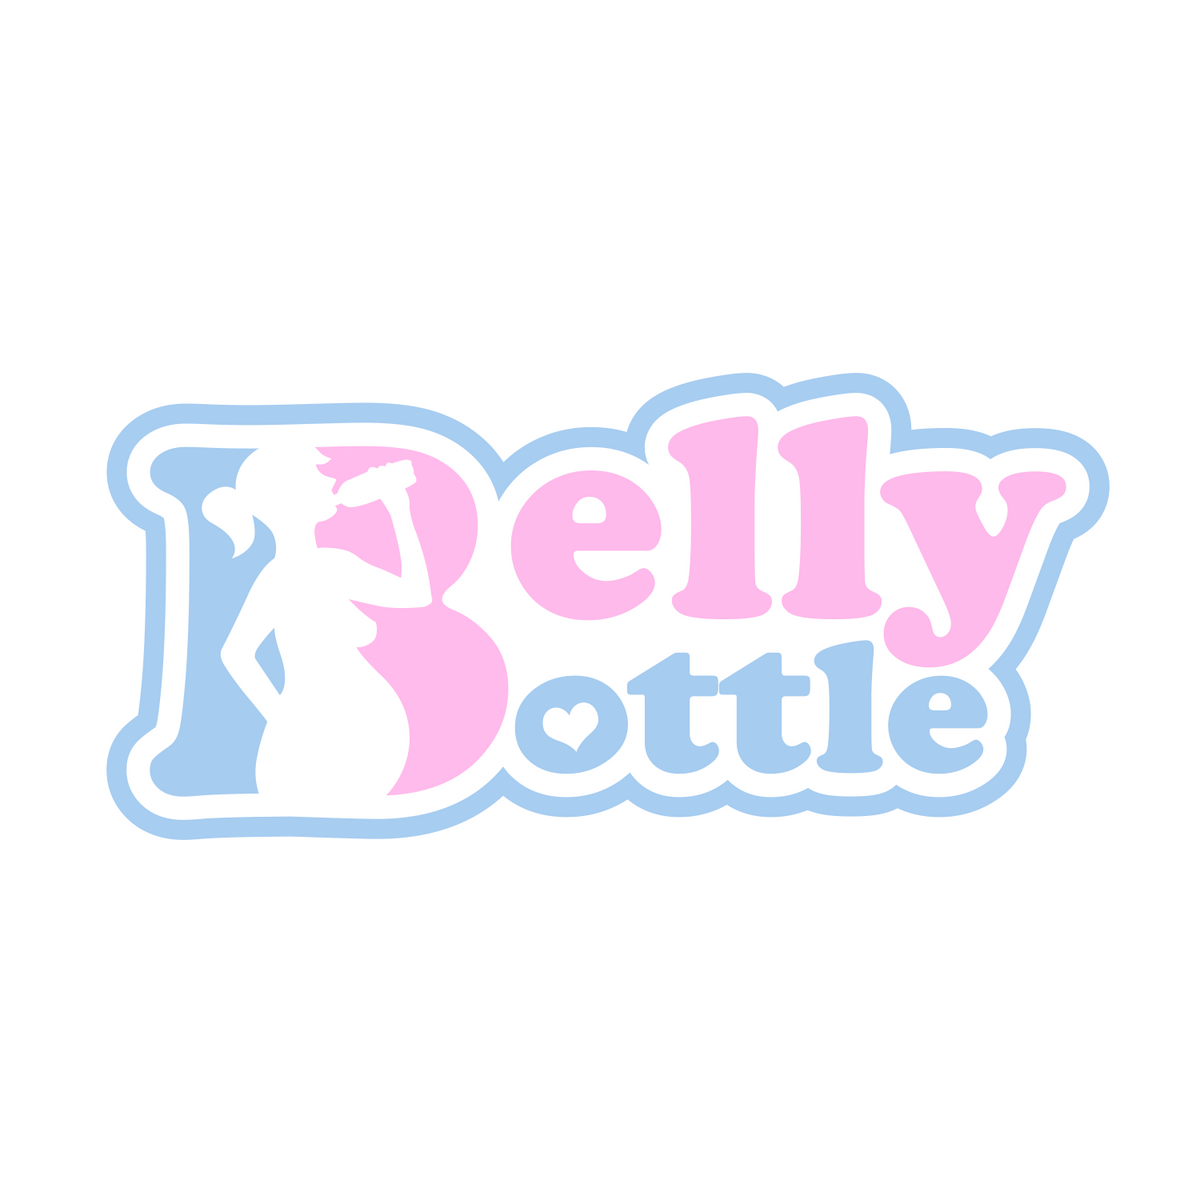 http://bellybottle.org/cdn/shop/files/BB-logo-2022_1200x1200.png?v=1641772240